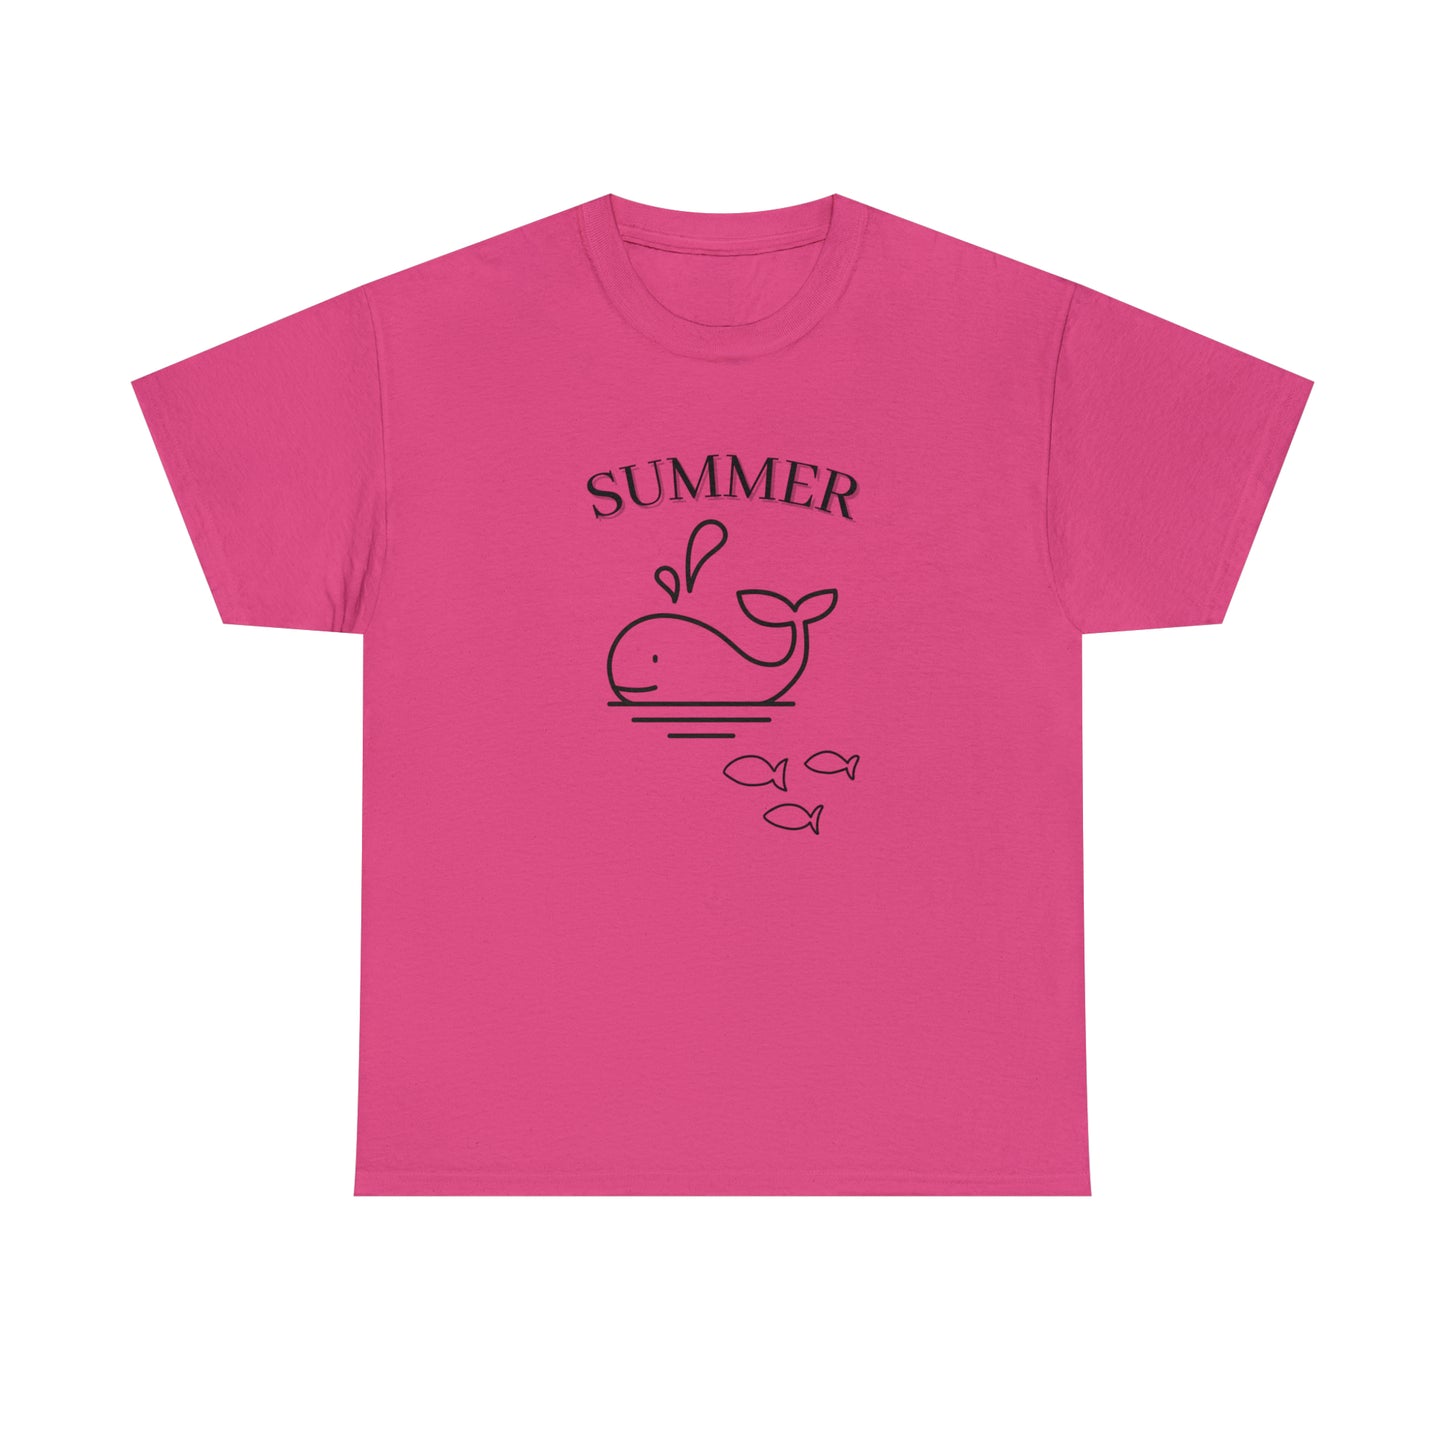 Summer T-shirt | Women's Summer T-shirt, Short Sleeve T-shirt, Beach T-shirt, Beach Lover Gift, Women's Summer Tee, Whale T-shirt